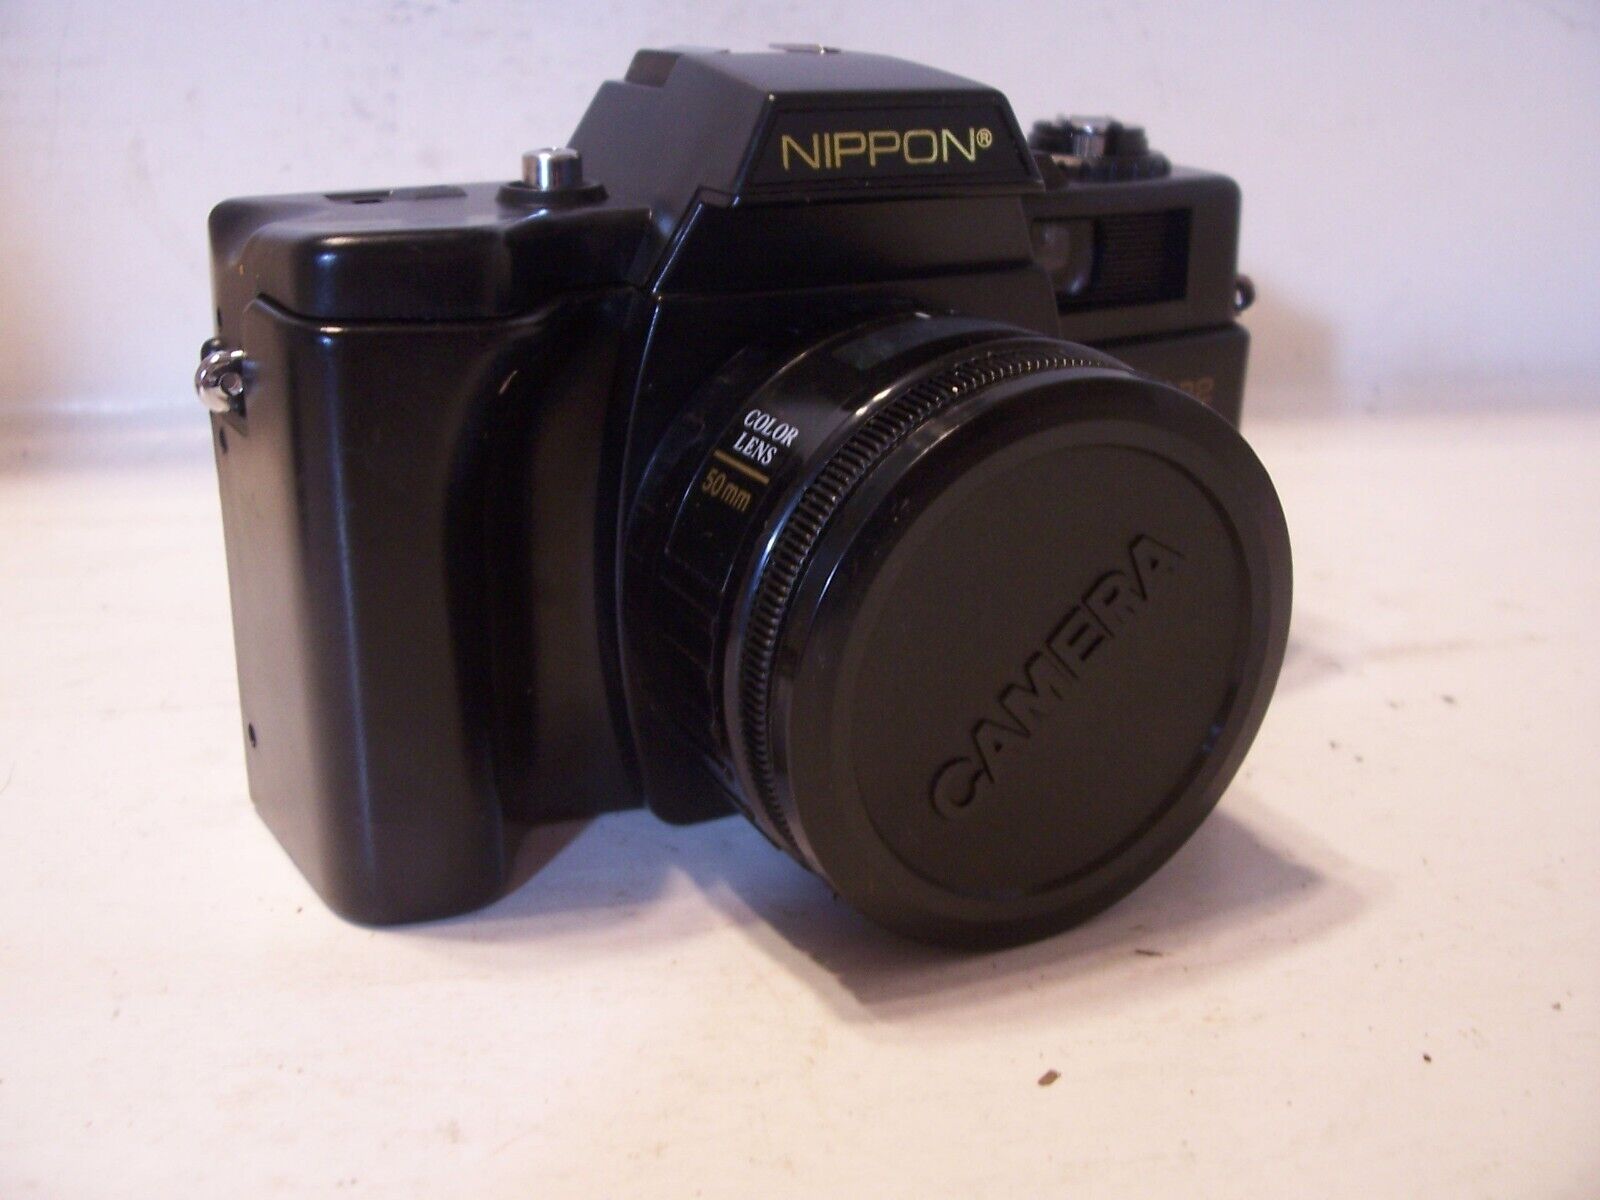 NEW Vintage Film 35mm Camera Nippon AR-4392F w/ Case, Strap, Sun Shade, Lens Cap Nippon ar 4392F - фотография #15